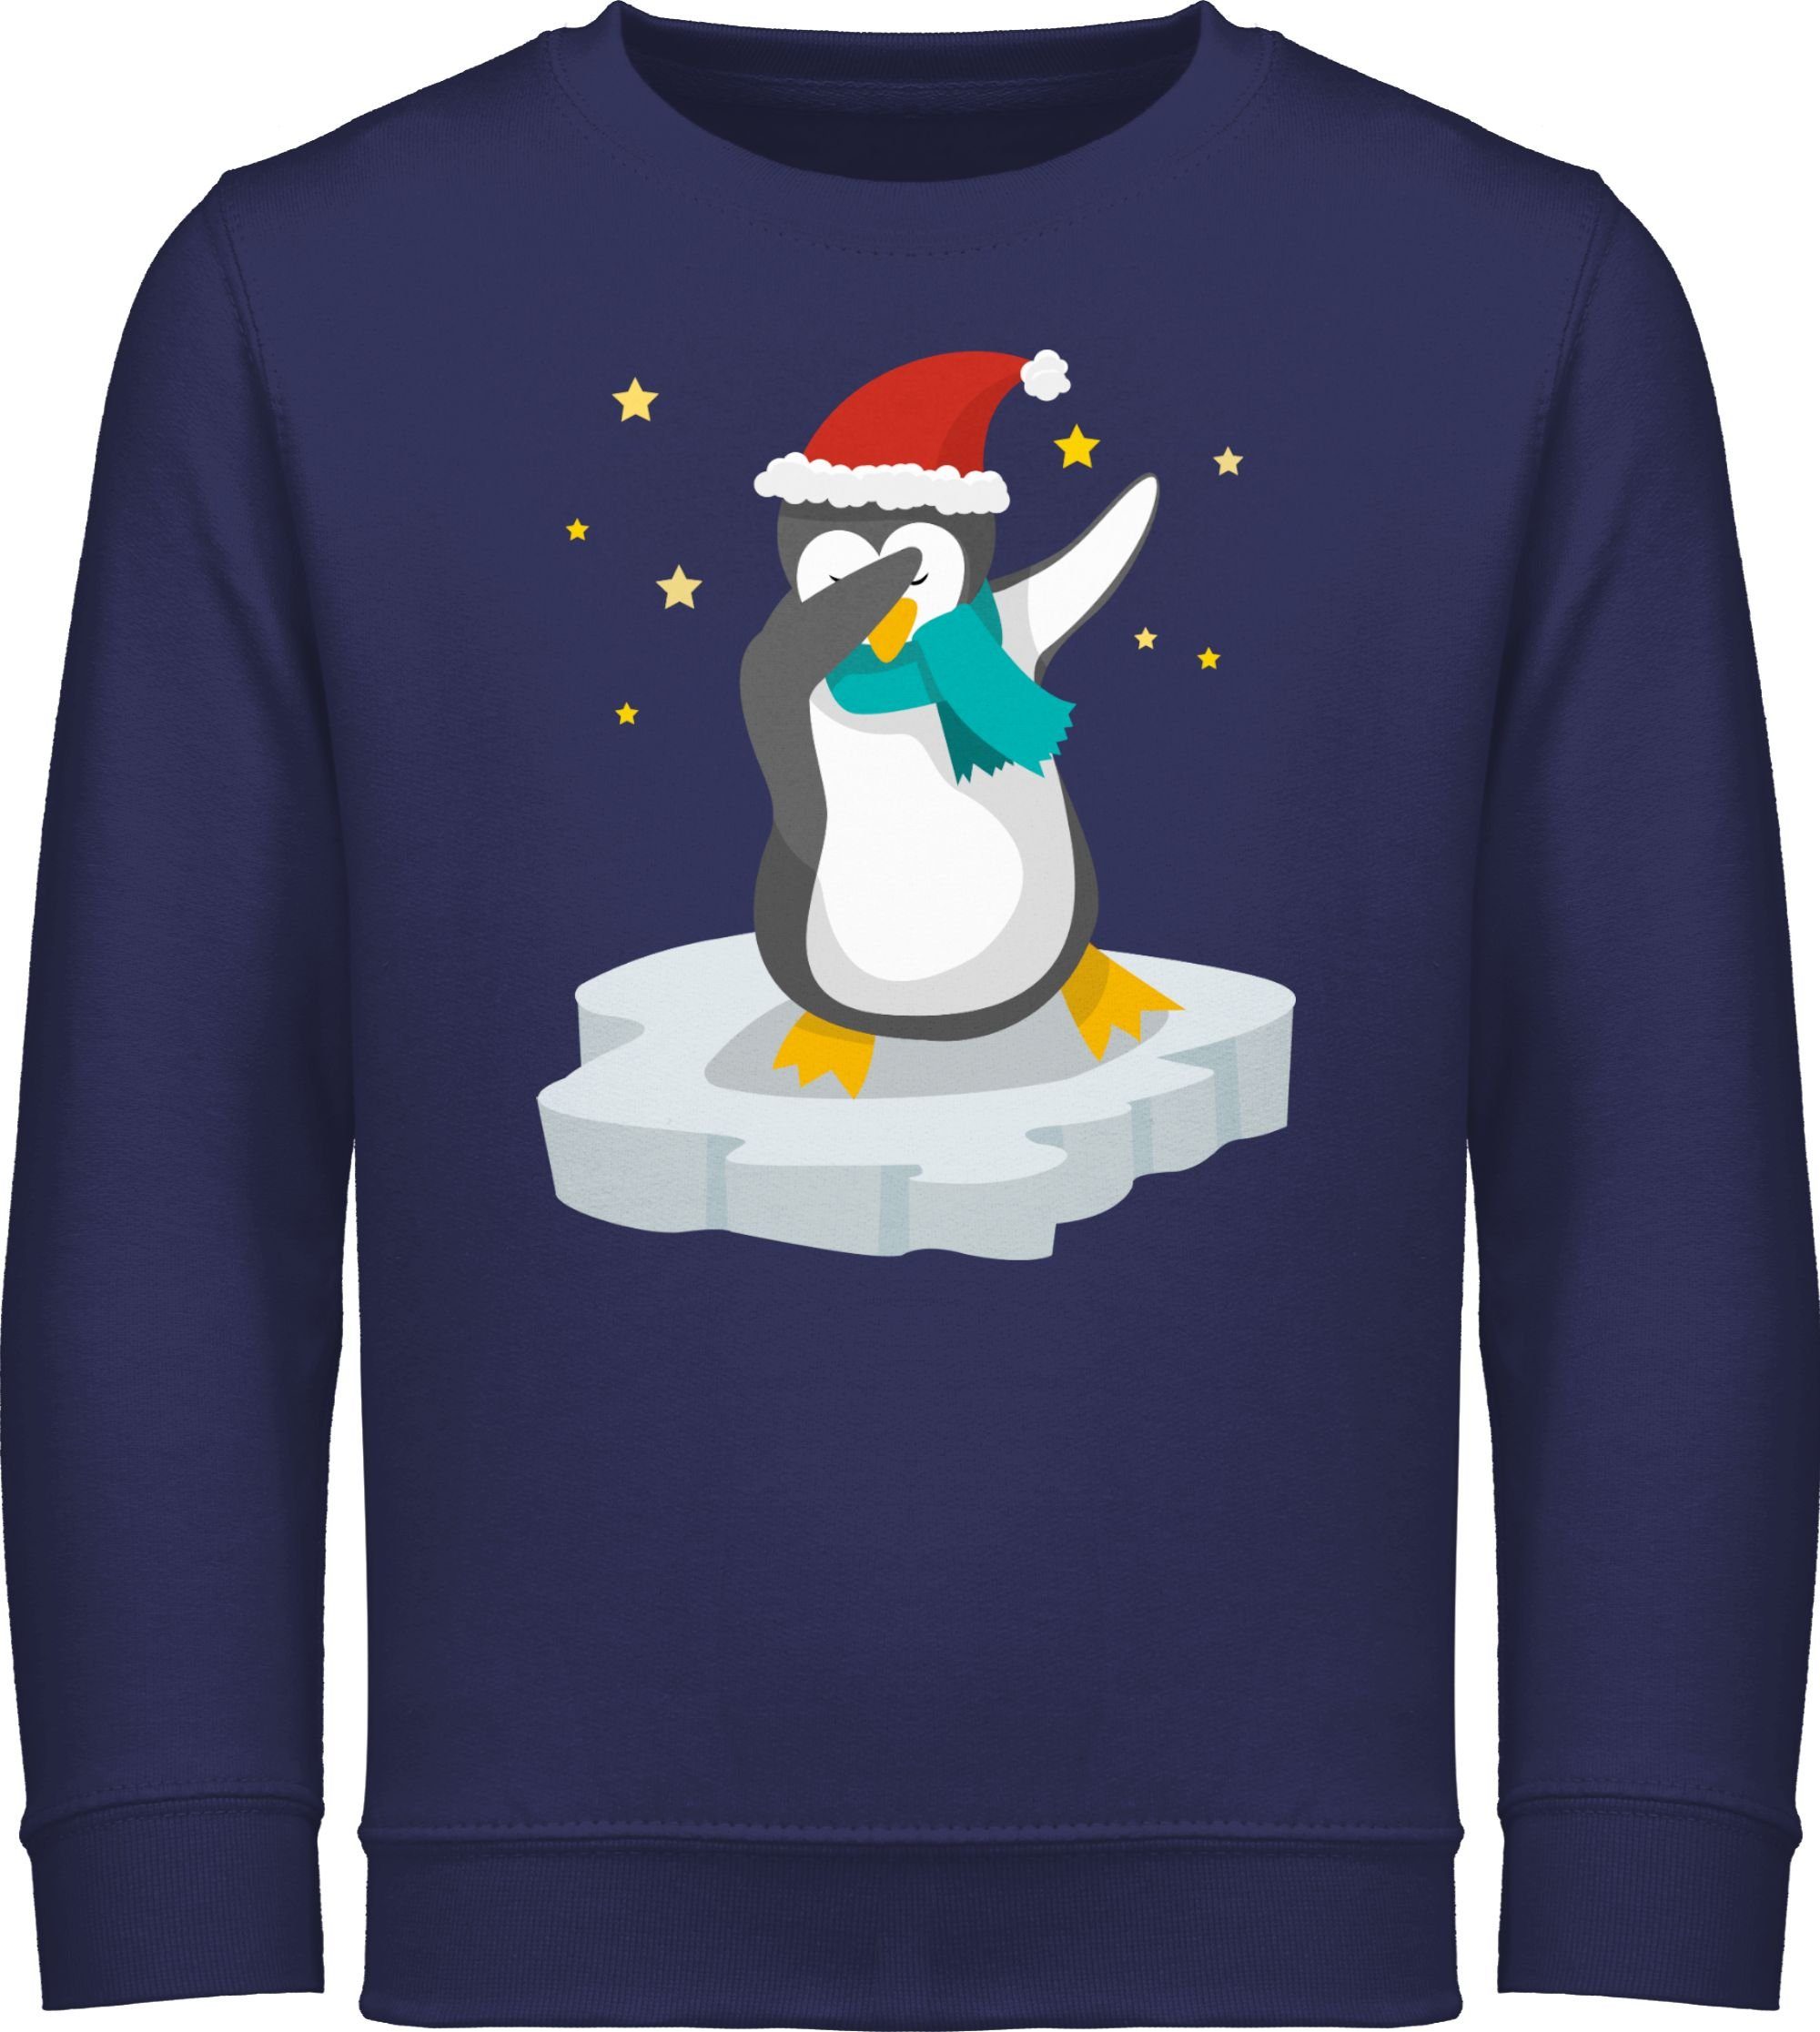 Shirtracer Sweatshirt Dab Pinguin Weihnachten Weihnachten Kleidung Kinder 1 Navy Blau